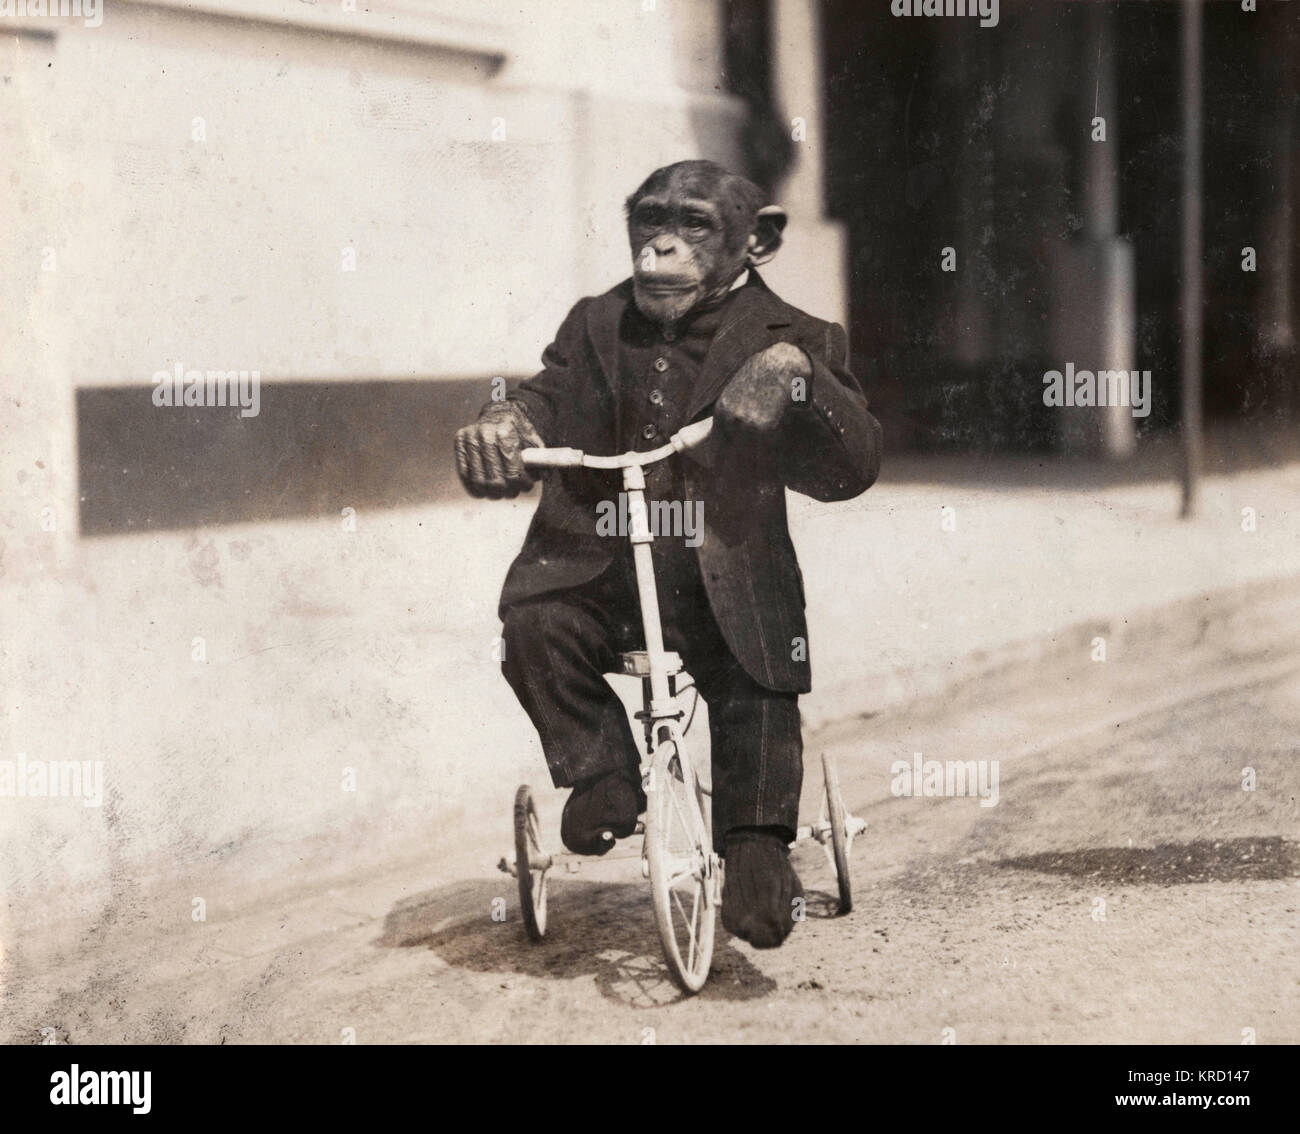 Eine intelligente Schimpanse namens Konsul, die als Teil der Bostock Jungle am Earl's Court Exhibition erschienen. Dieses Foto zeigt ihn für eine Fahrt auf seinem Dreirad. (3 von 3) Datum: 1908 Stockfoto